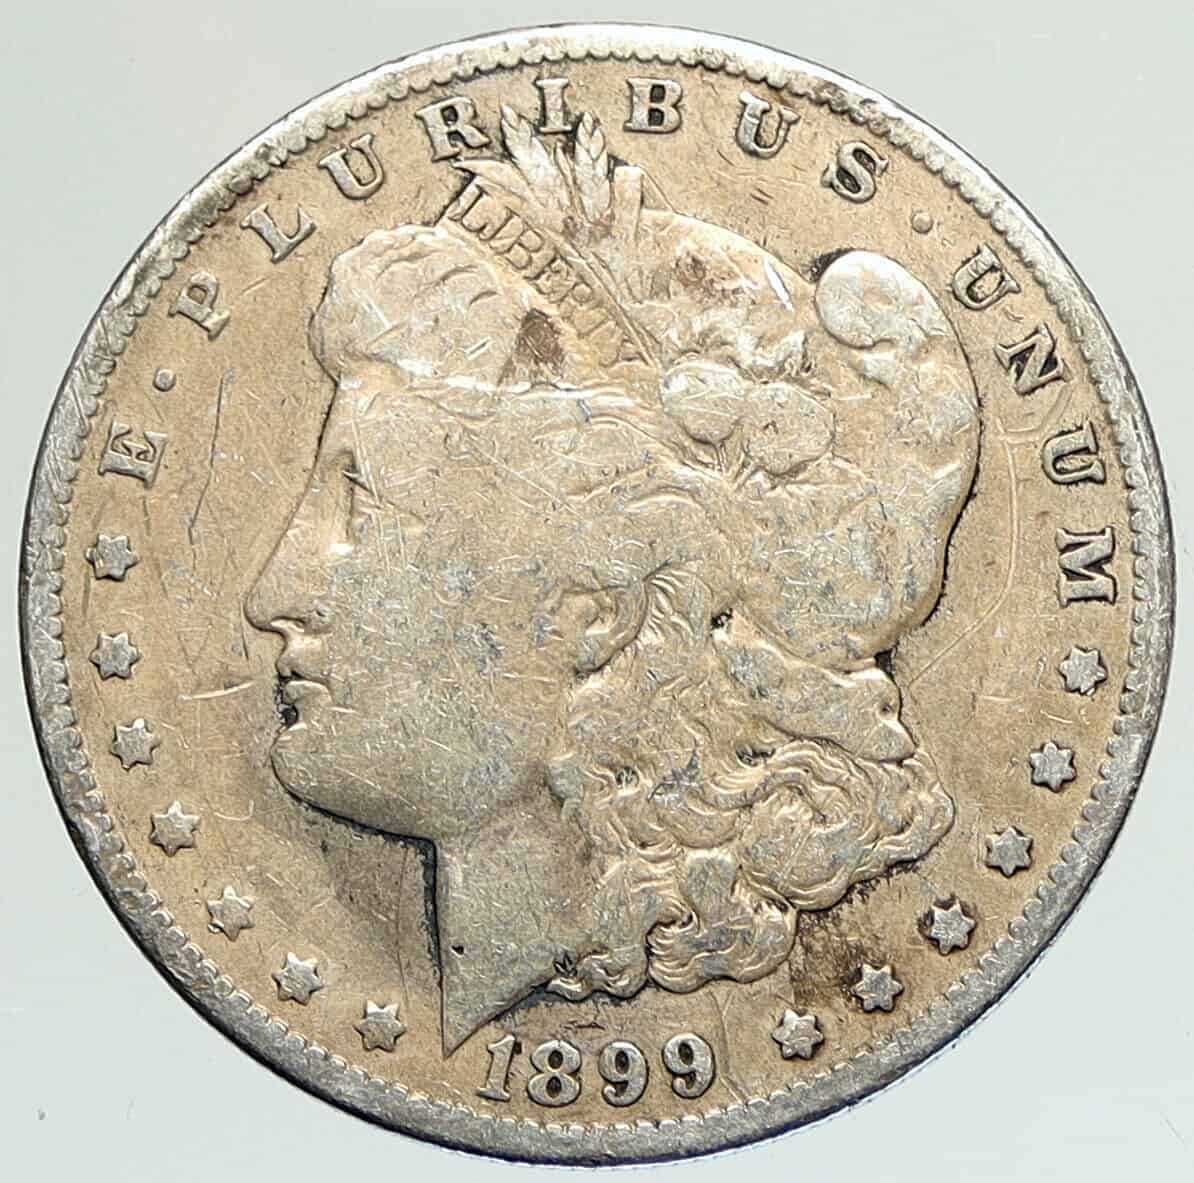 1899 Silver Dollar Value